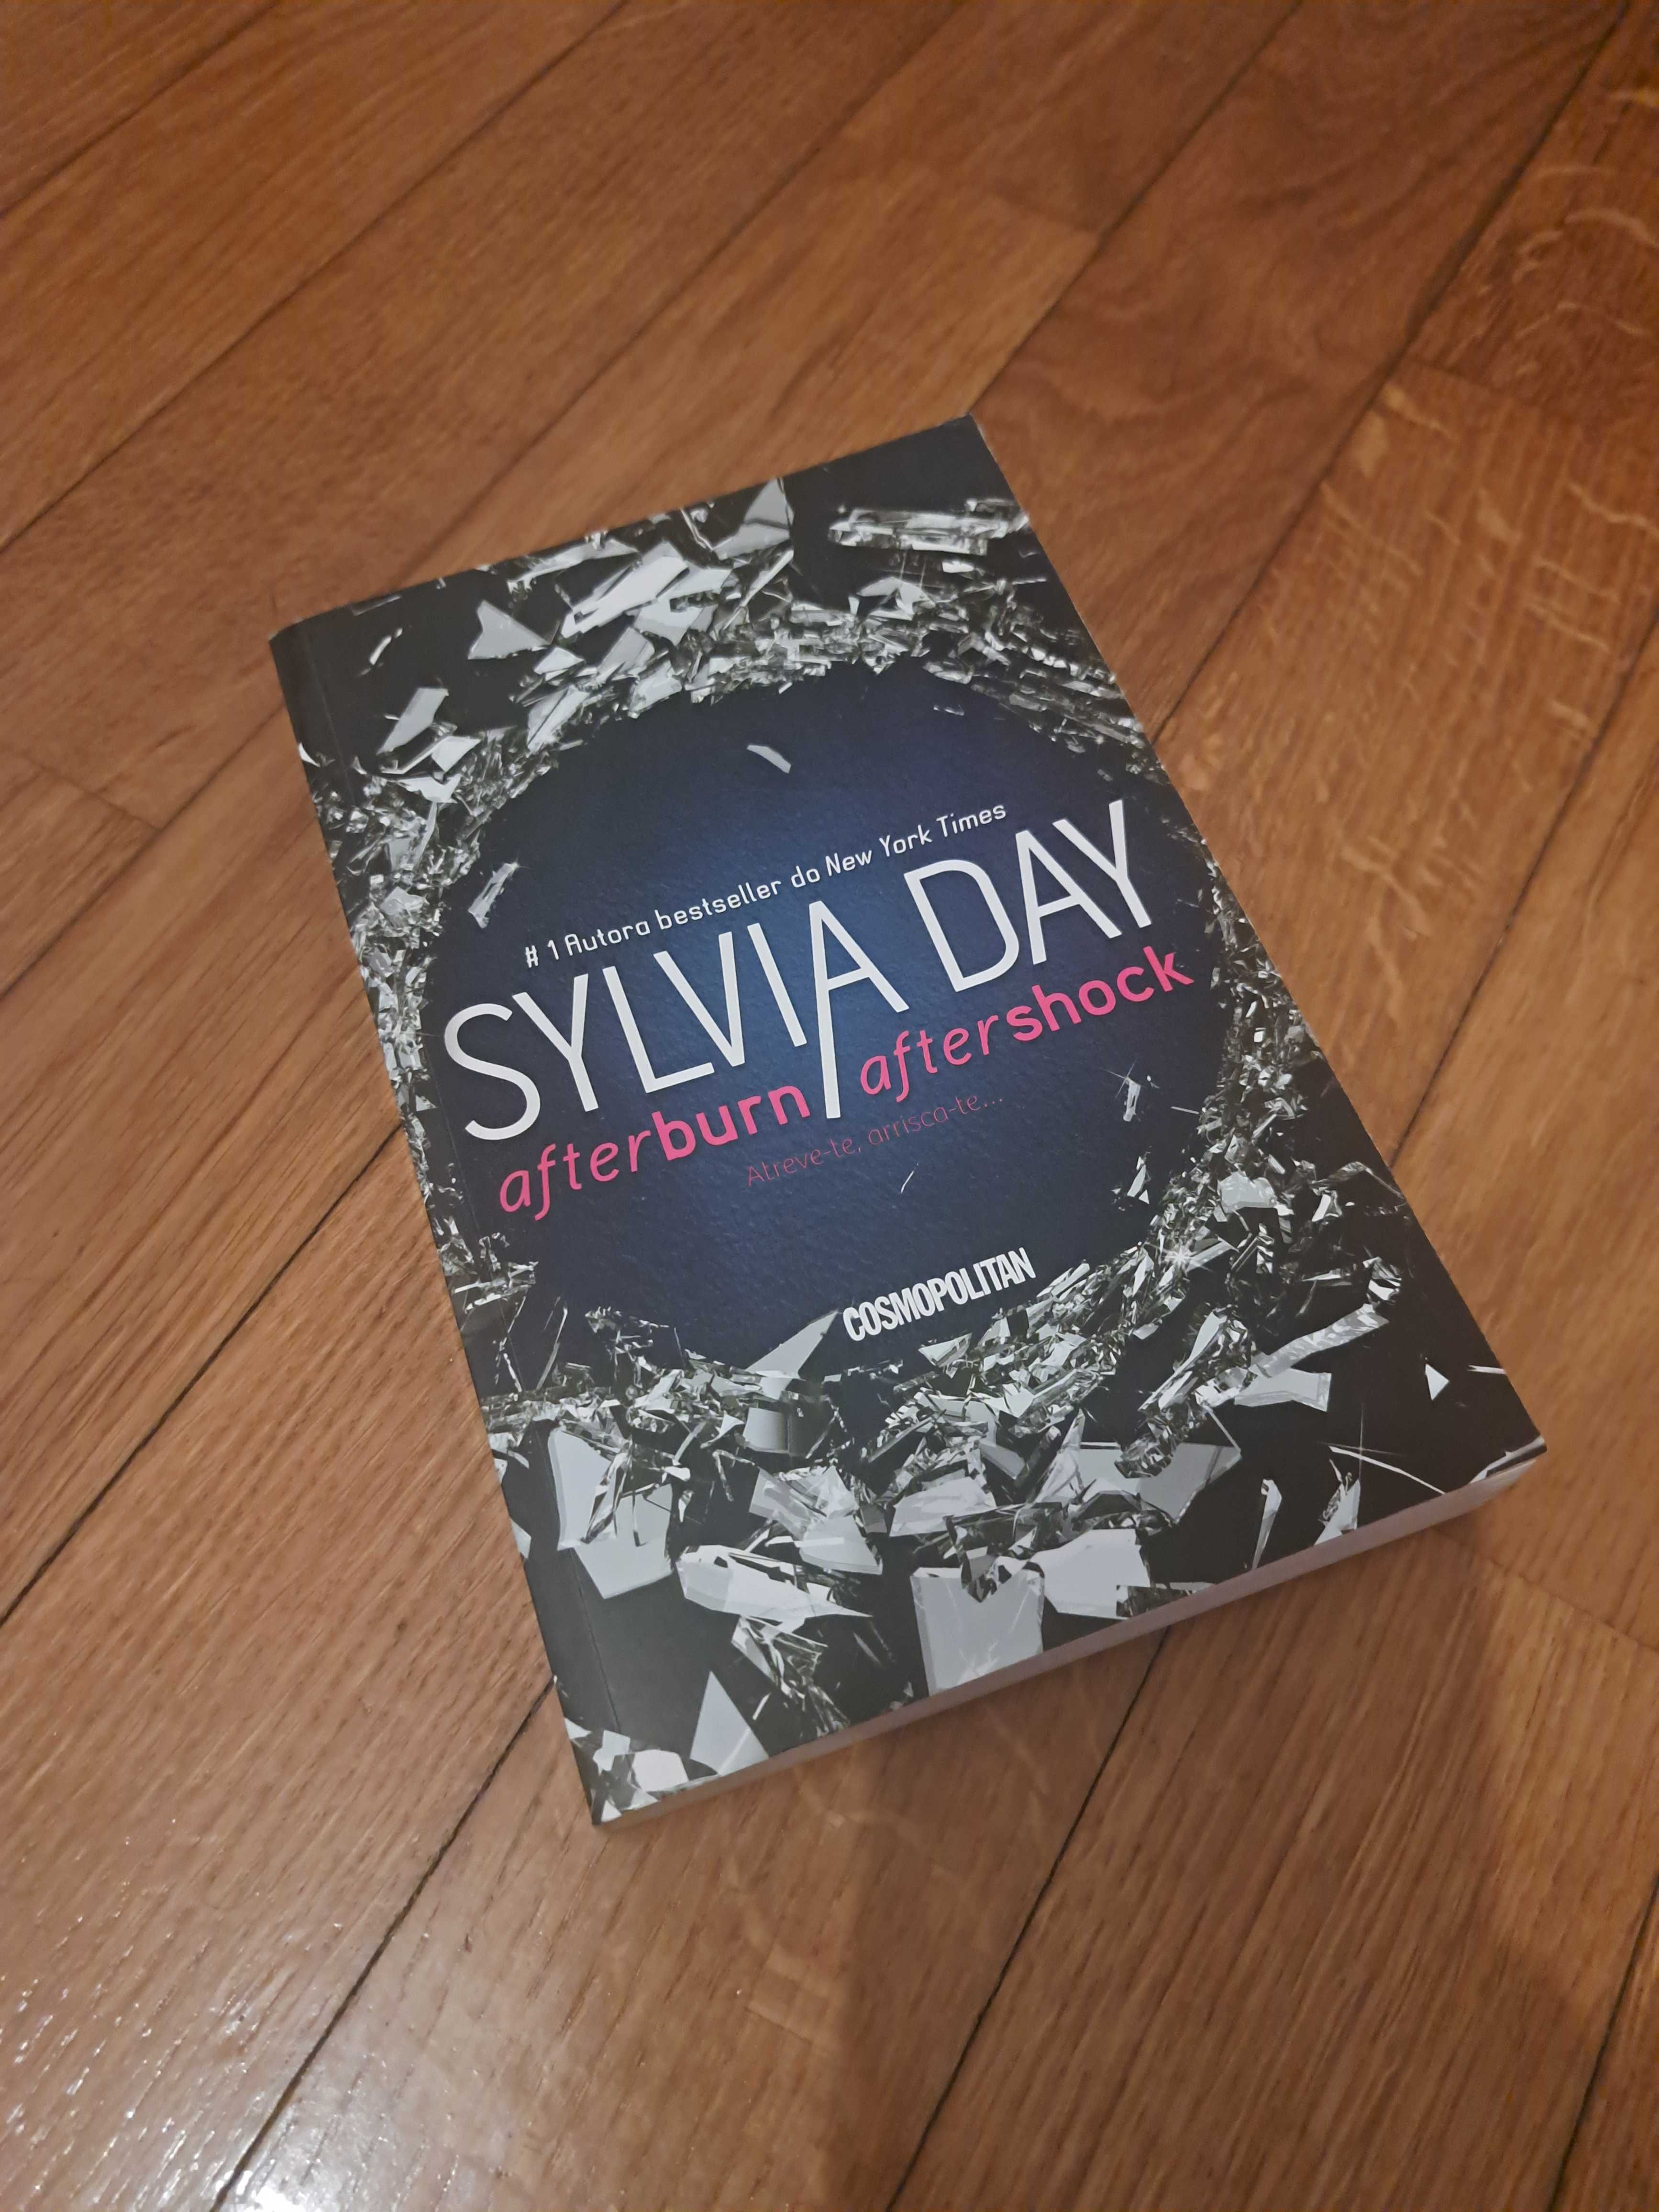 Livro Afterburn / Aftershock por Sylvia Day